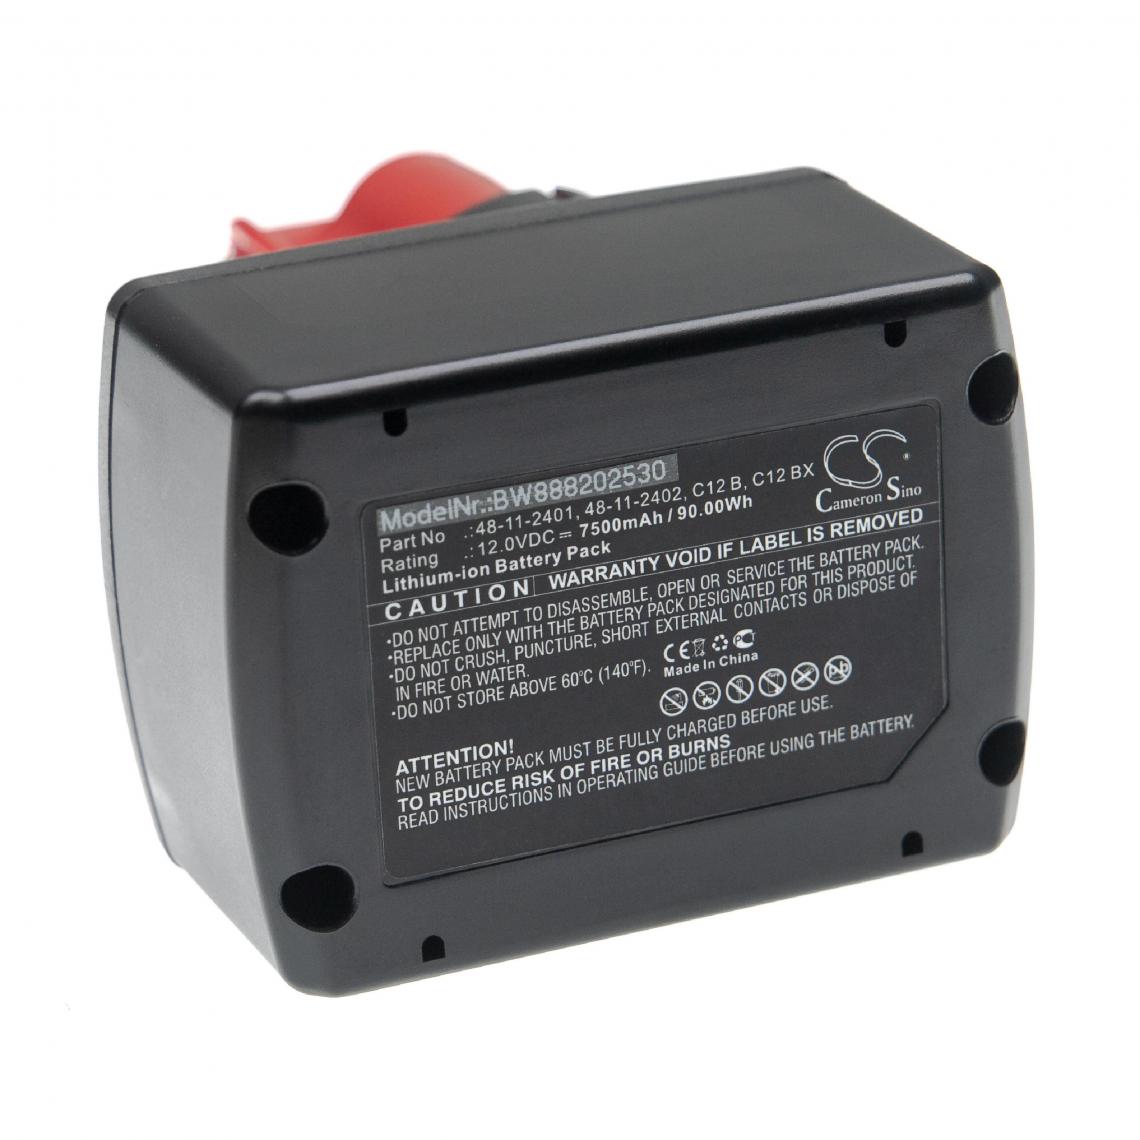 Vhbw - vhbw Batterie compatible avec Milwaukee 2277-21, 2277-21NST, 2290-20, 2290-21, 2310-21 outil électrique (7500mAh Li-ion 12 V) - Clouterie